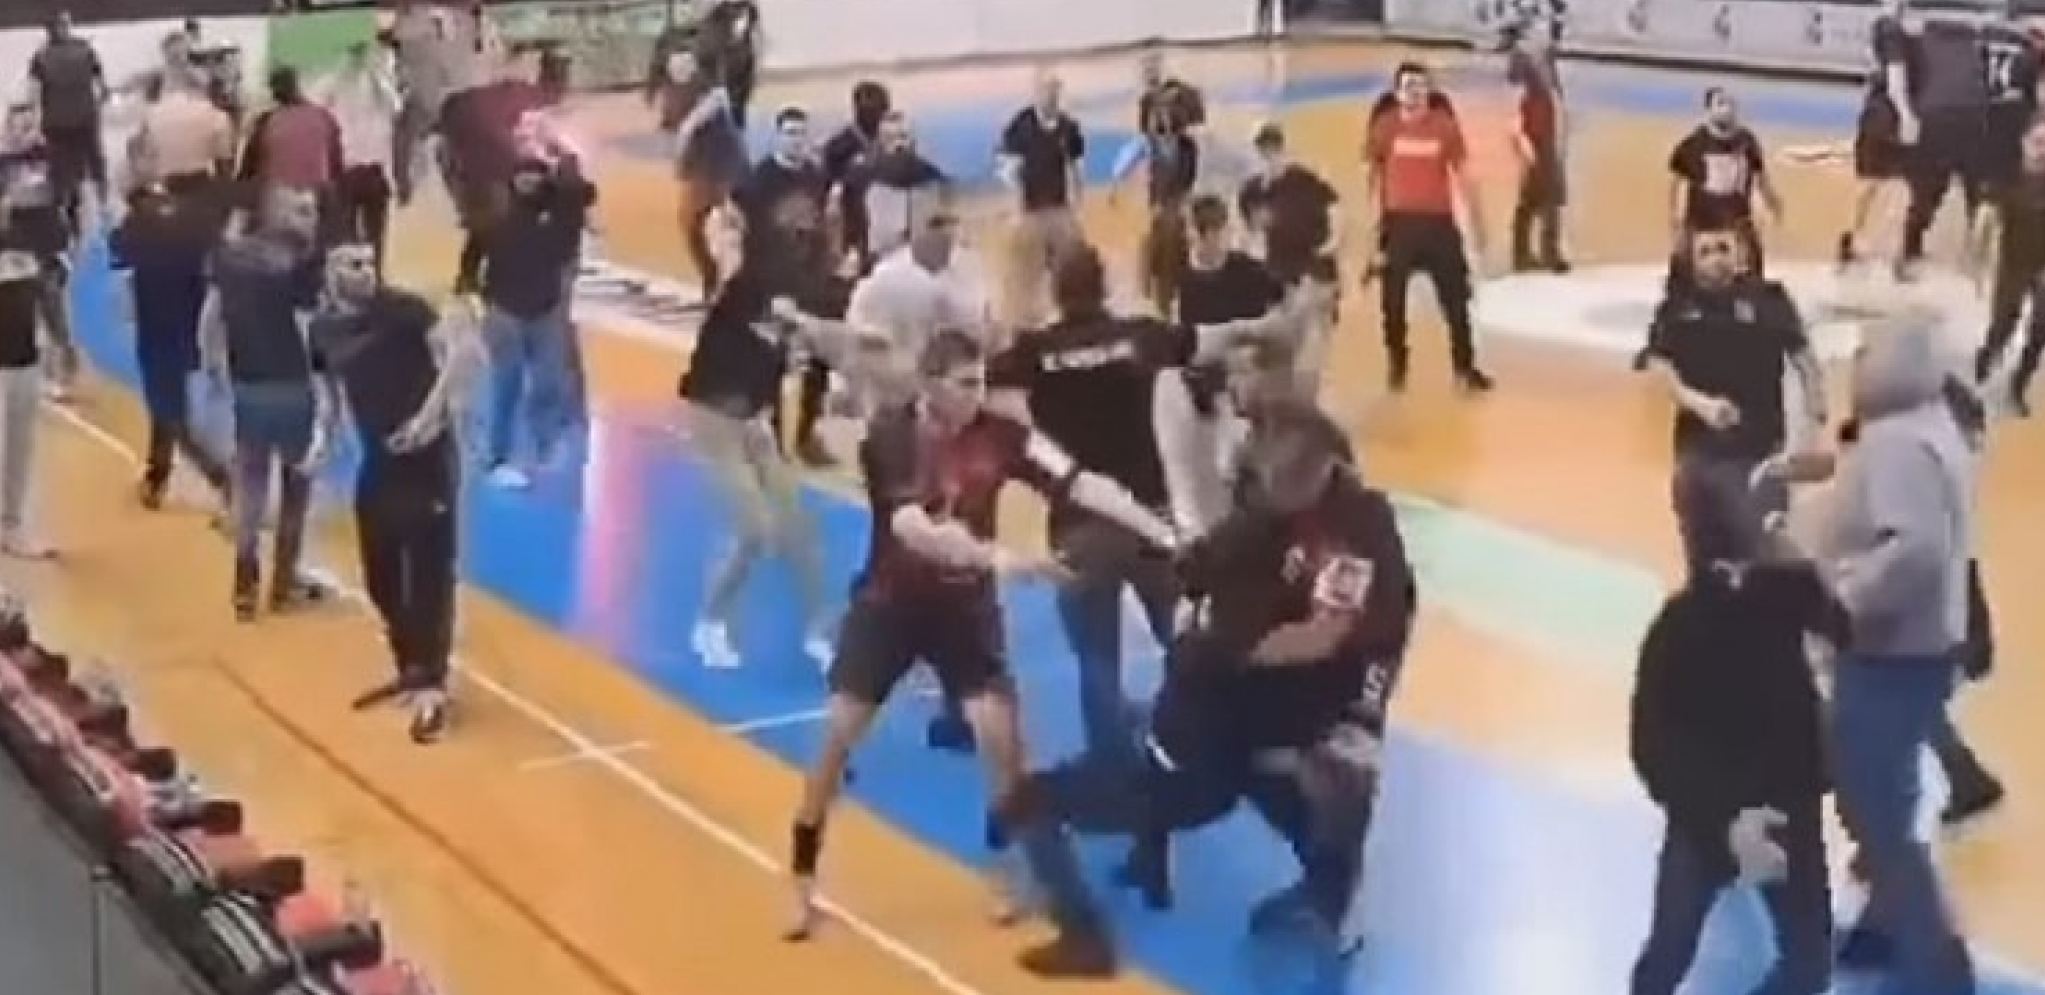 NEVIĐENI HAOS U MAKEDONIJI Igrač bacao huligana po terenu, udarao ga u glavu (VIDEO)